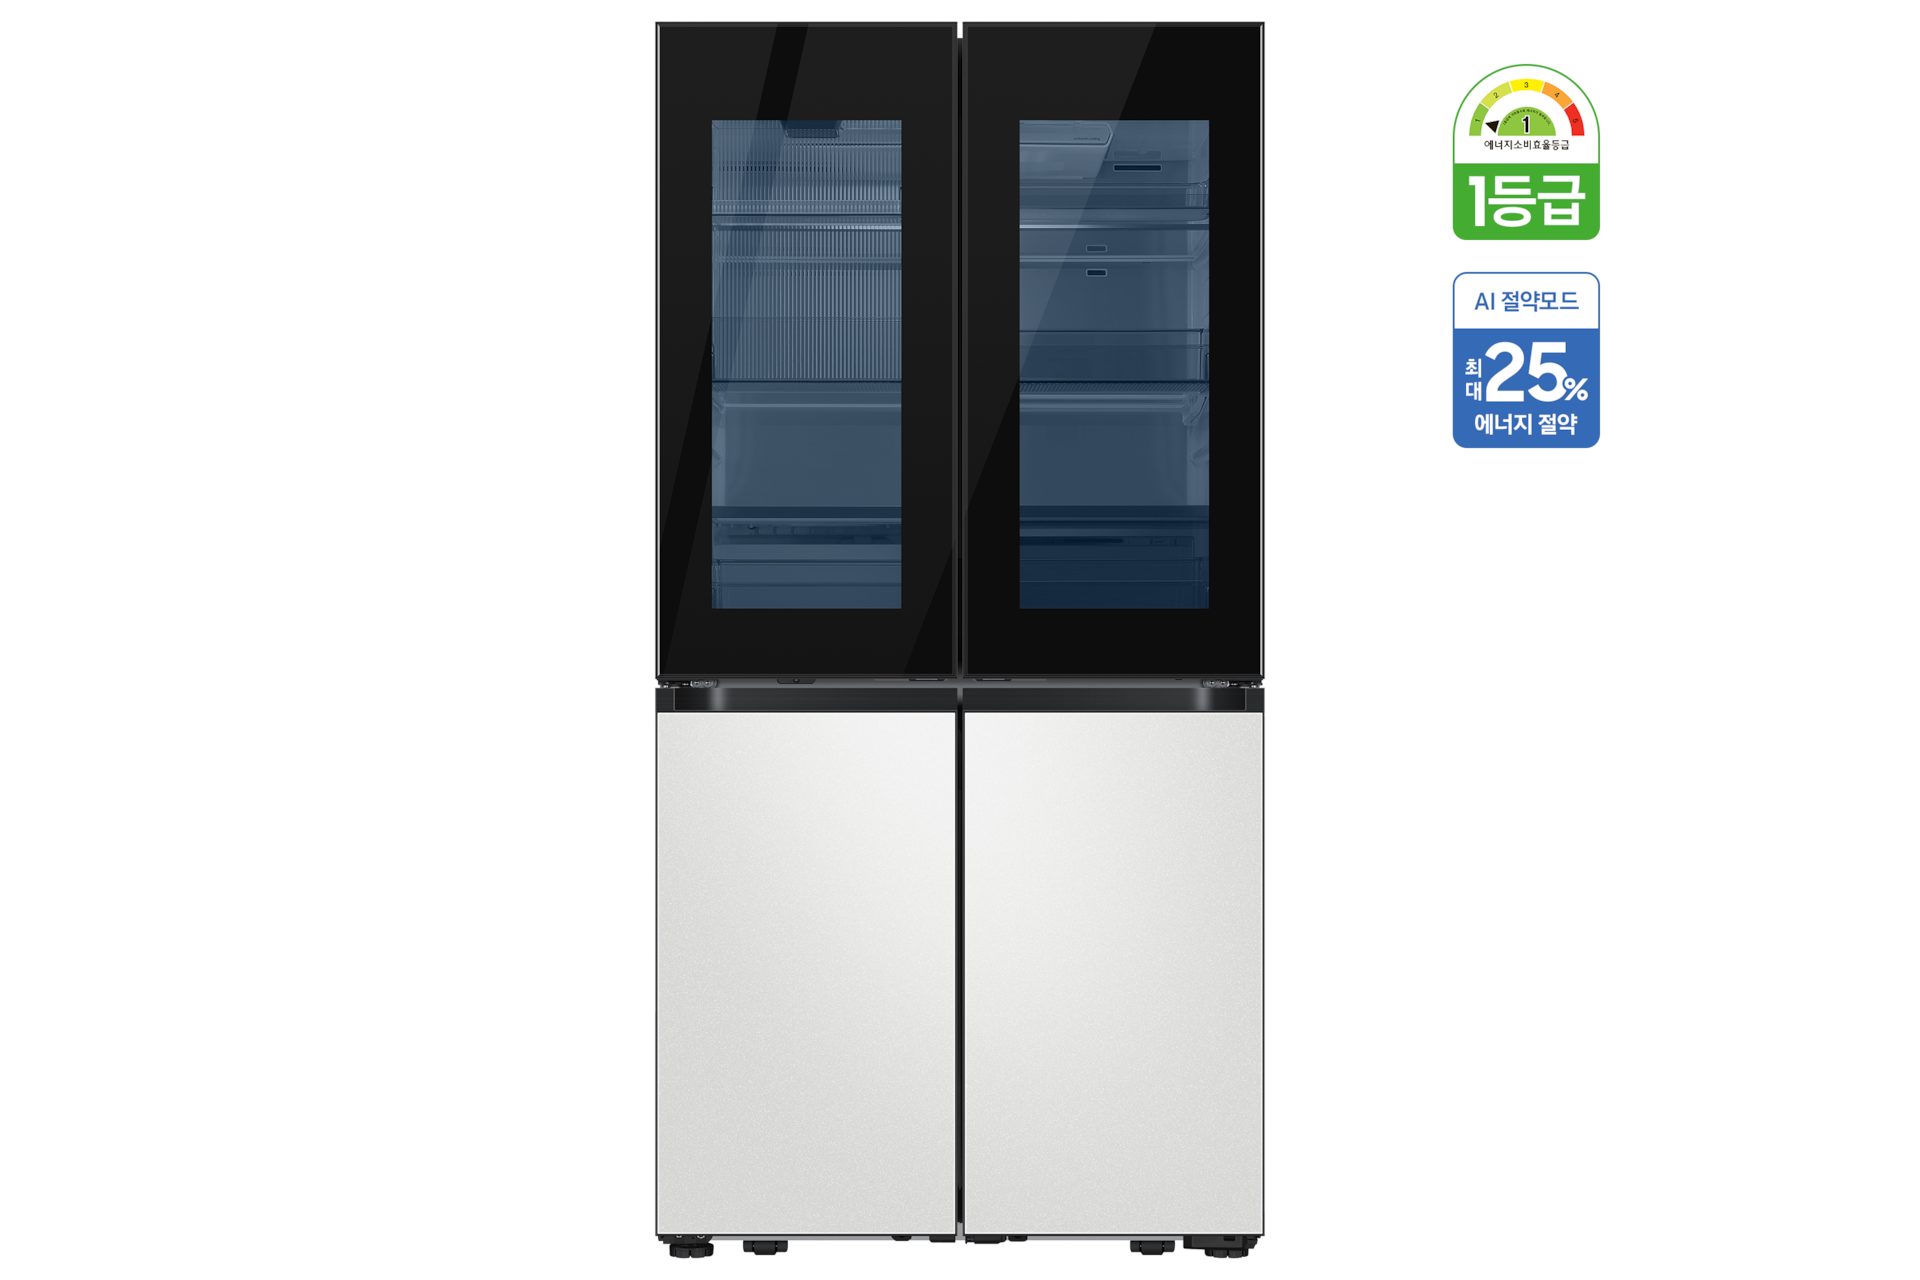 BESPOKE 냉장고 4도어 868 L 코타 화이트 정면 투명도어 라이팅 온, 에너지 소비효율 1등급, AI 절약 모드 최대 25% 에너지 절약 태그 부착